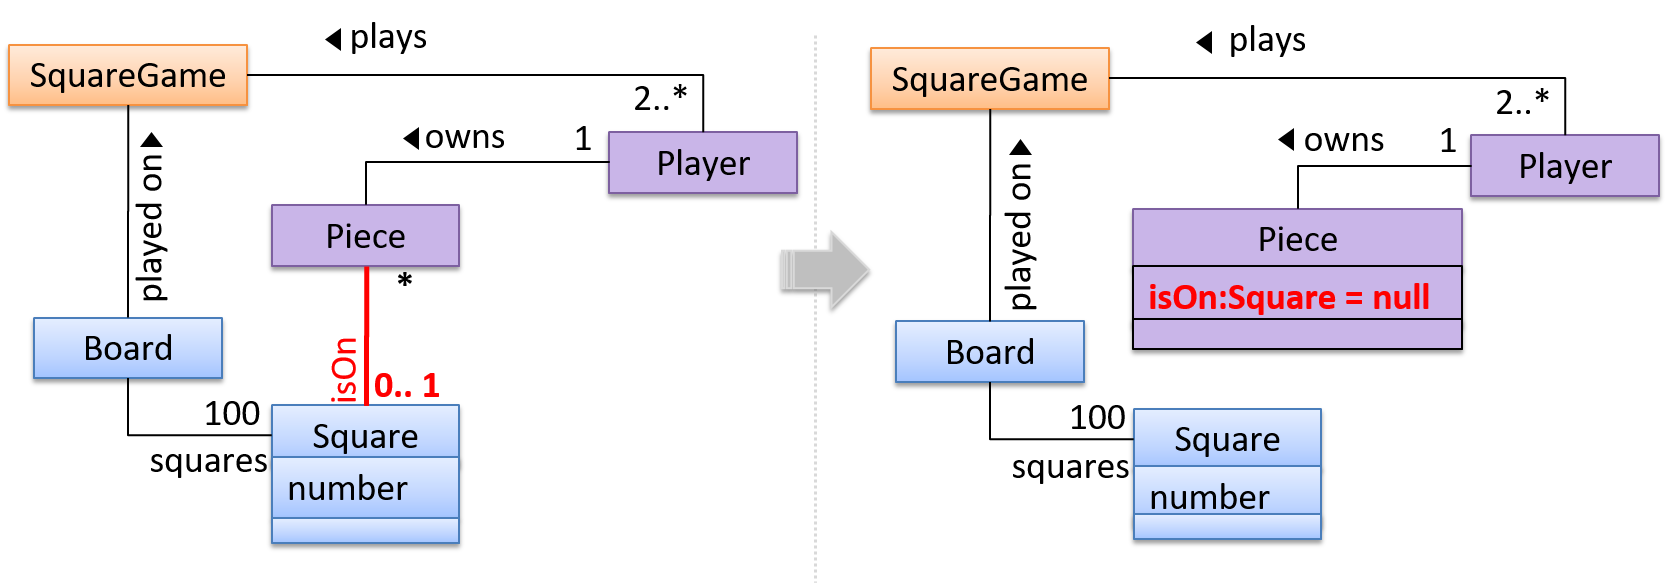 modelio class diagram attribute type